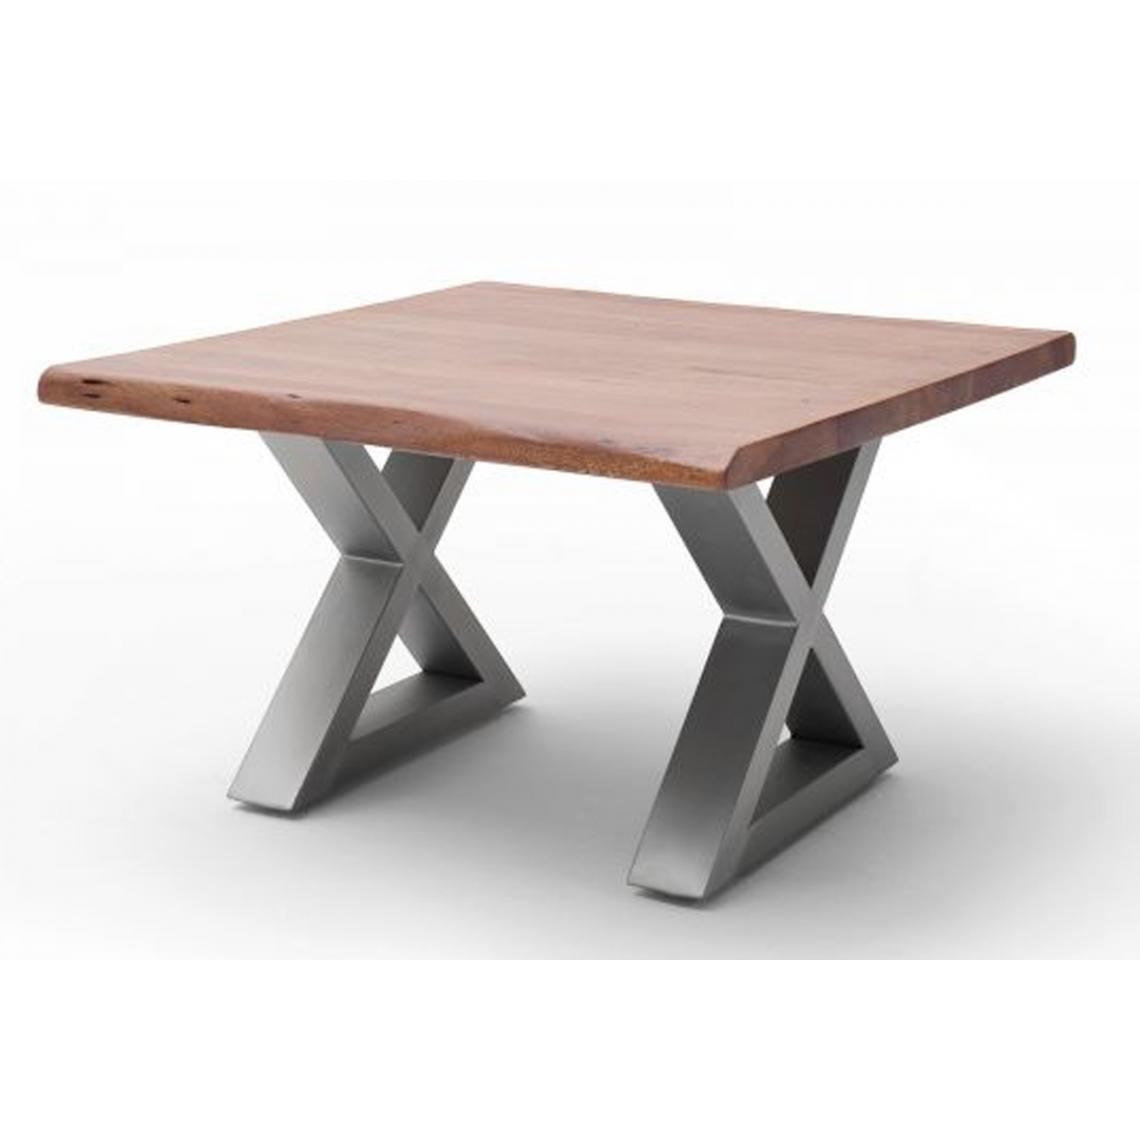 Pegane - Table basse en bois d'acacia massif noyer / acier inoxydable - L.75 x H.45 x P.75 cm - Tables basses